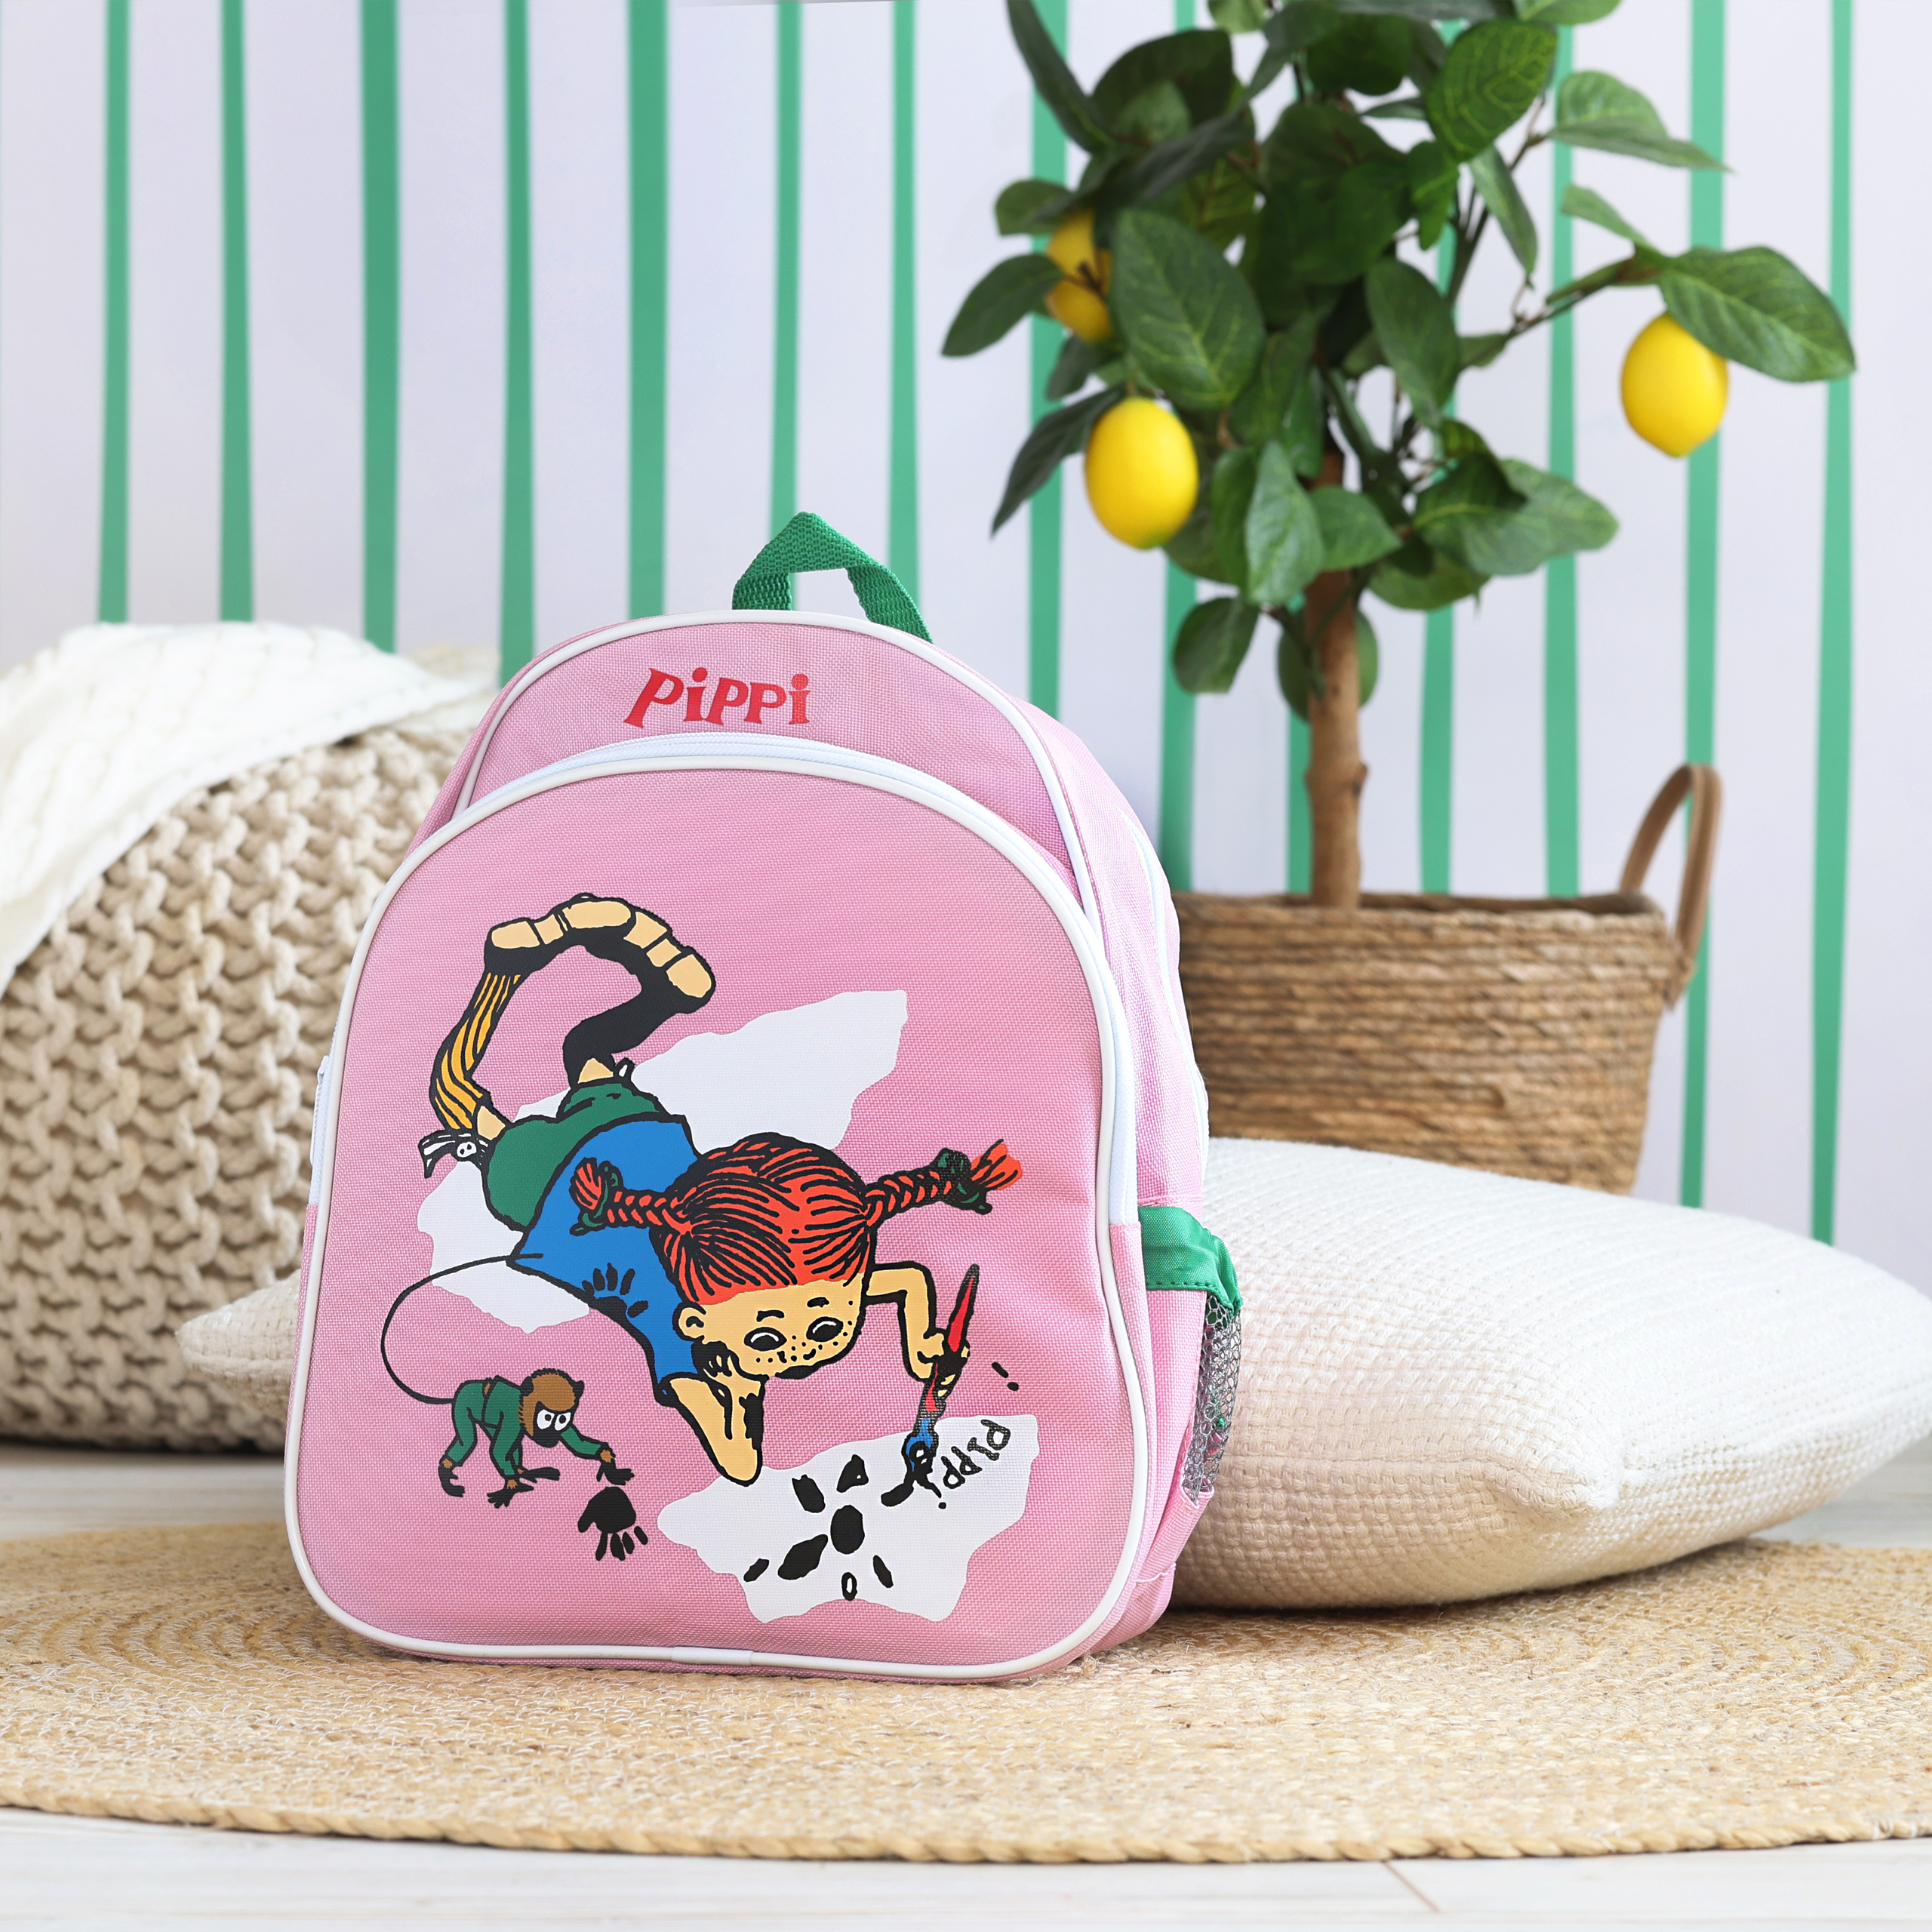 Kids bags pippi kids bag backpack pink